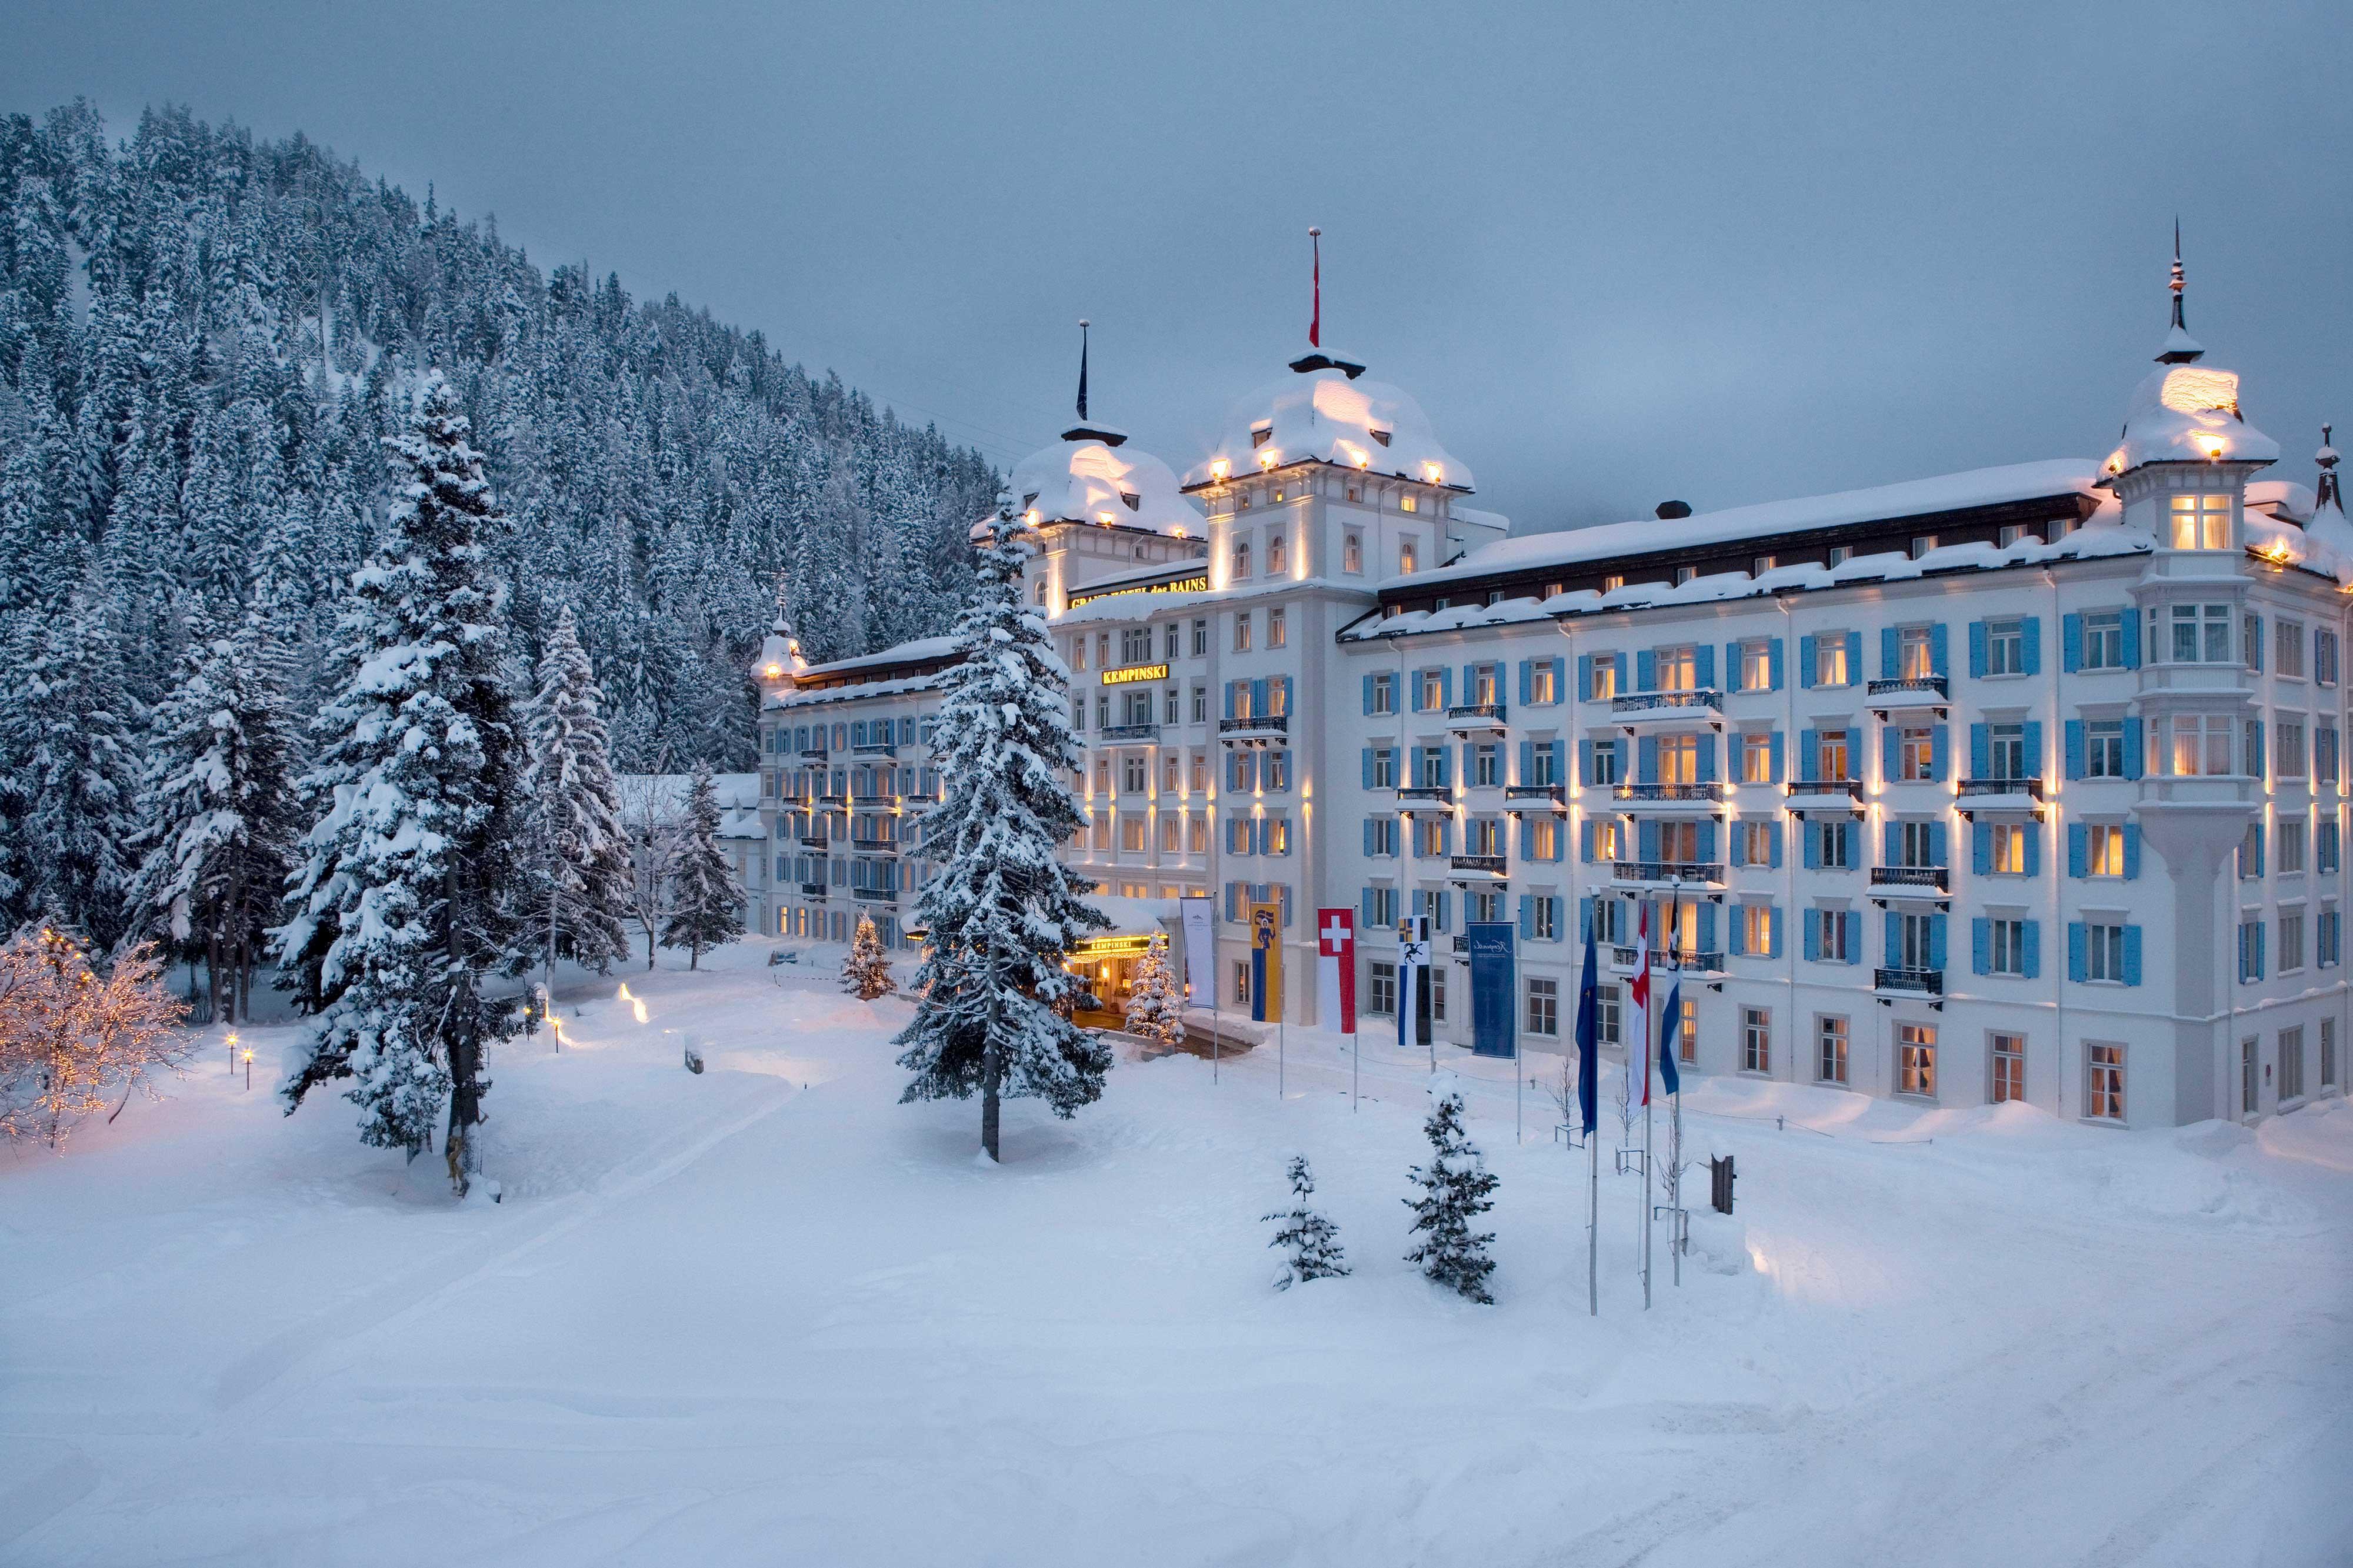 Das beeindruckende Kempinski Grand Hotel in St. Moritz